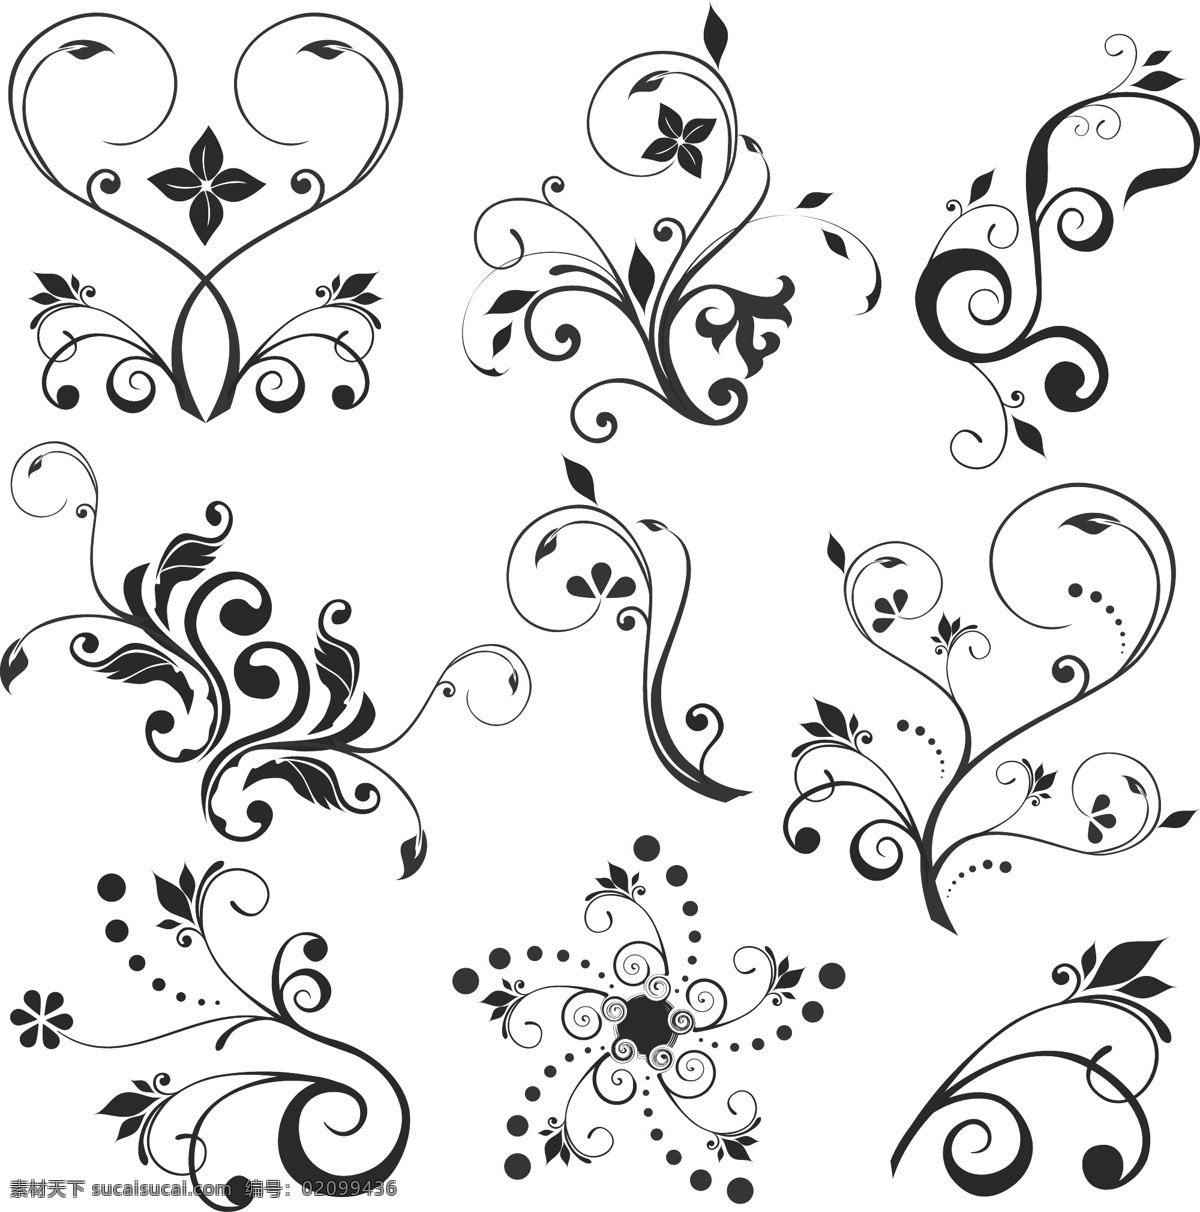 单色 花纹 矢量 创意花卉 单色花纹 花卉设计 花卉图案 花纹样式 模板 设计稿 矢量设计 素材元素 植物花纹 图案设计 源文件 矢量图